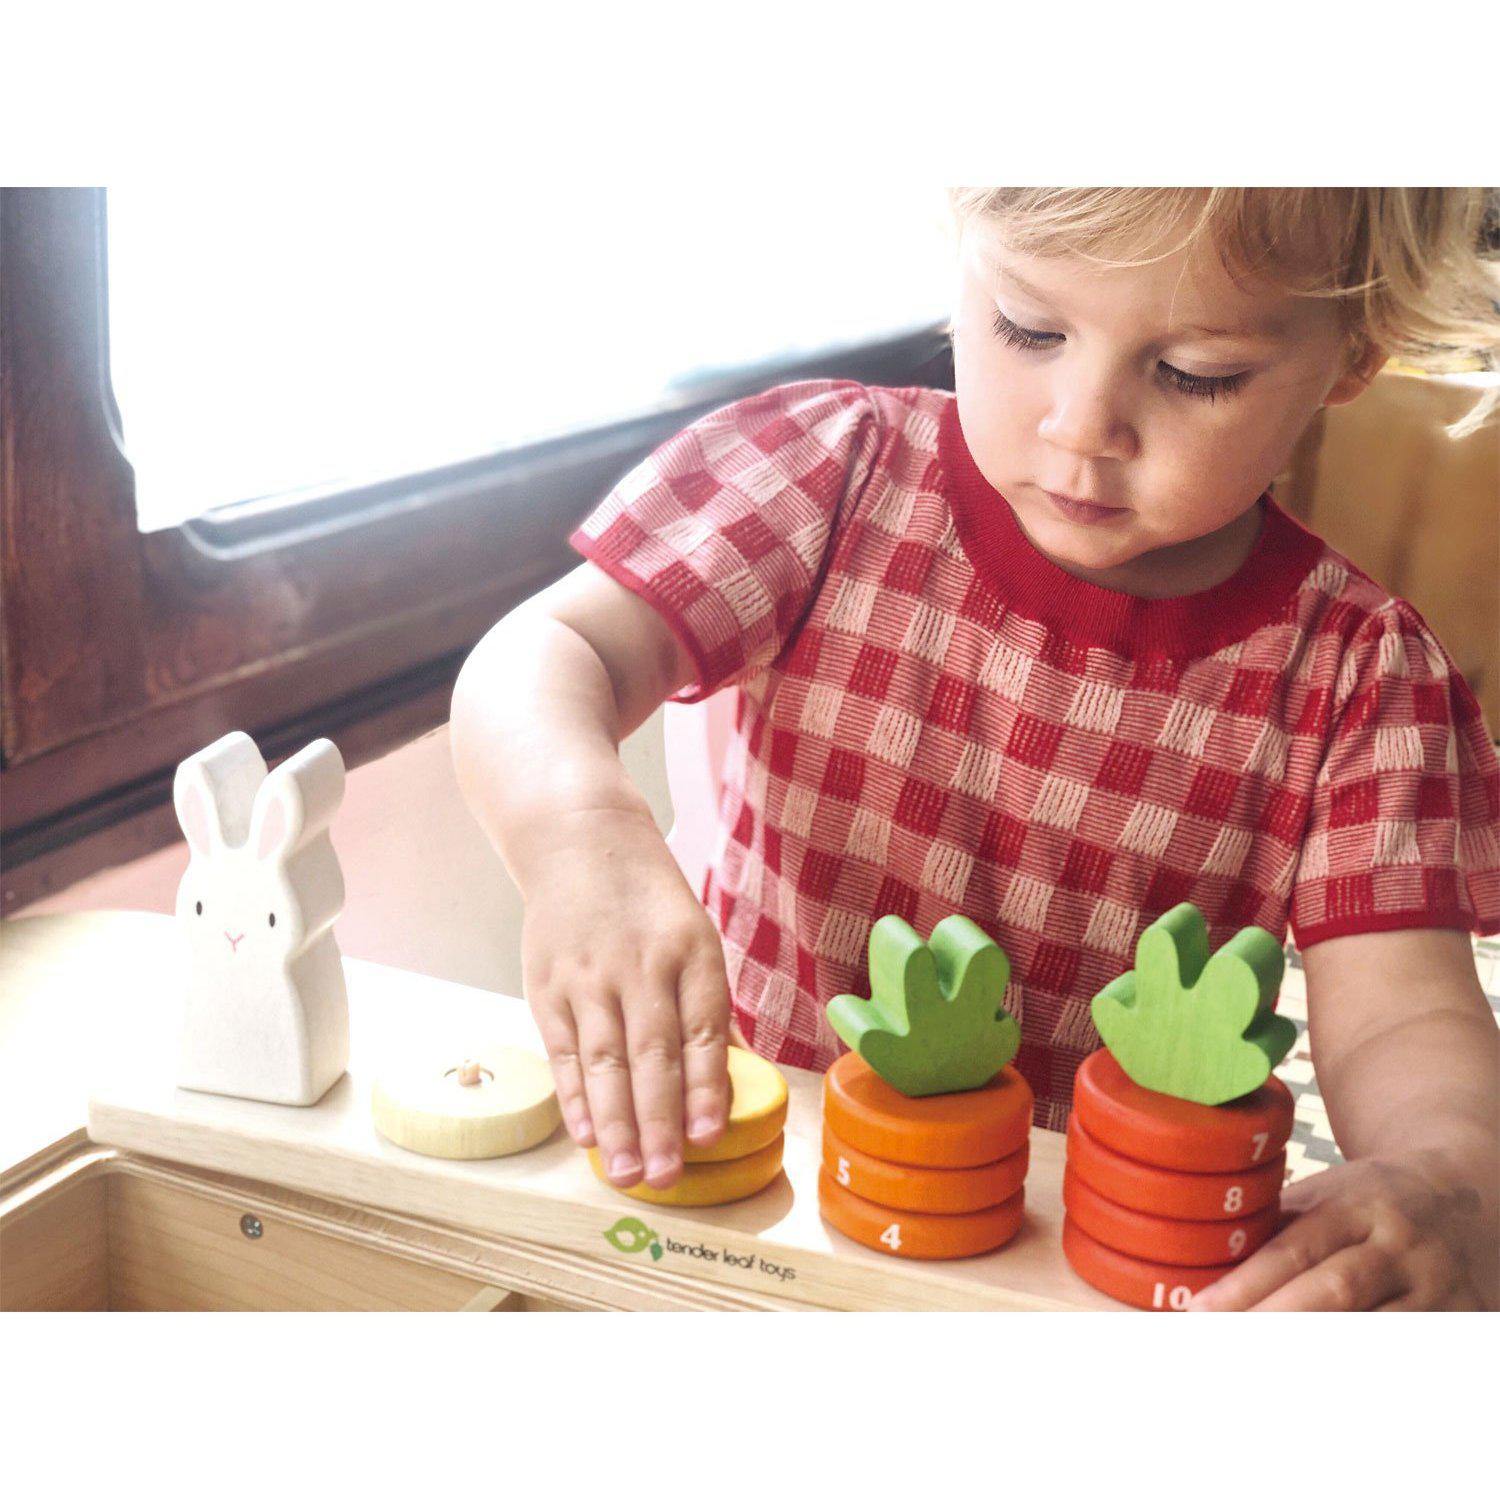 Murokszámoló, prémium minőségű fából - Counting Carrots - 16 darab - Tender Leaf Toys-Tender Leaf Toys-5-Játszma.ro - A maradandó élmények boltja